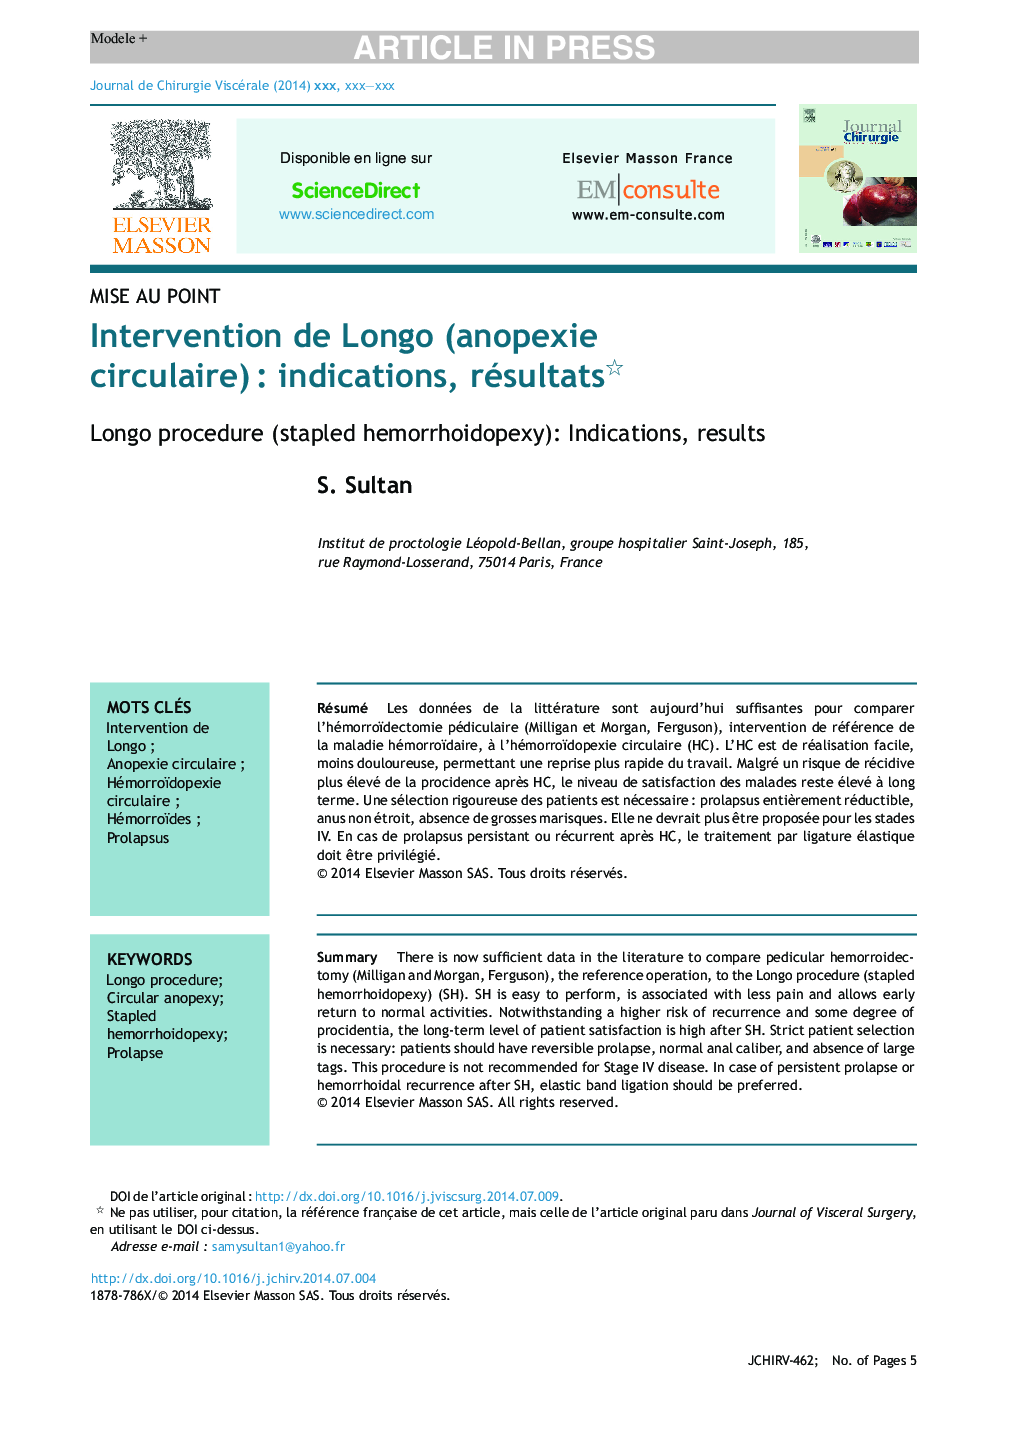 Intervention de Longo (anopexie circulaire)Â : indications, résultats